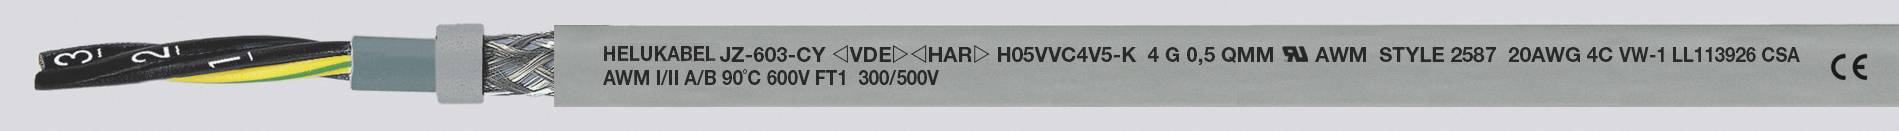 HELUKABEL JZ-603-CY Steuerleitung 5 G 0.75 mm² Grau 83733-1000 1000 m